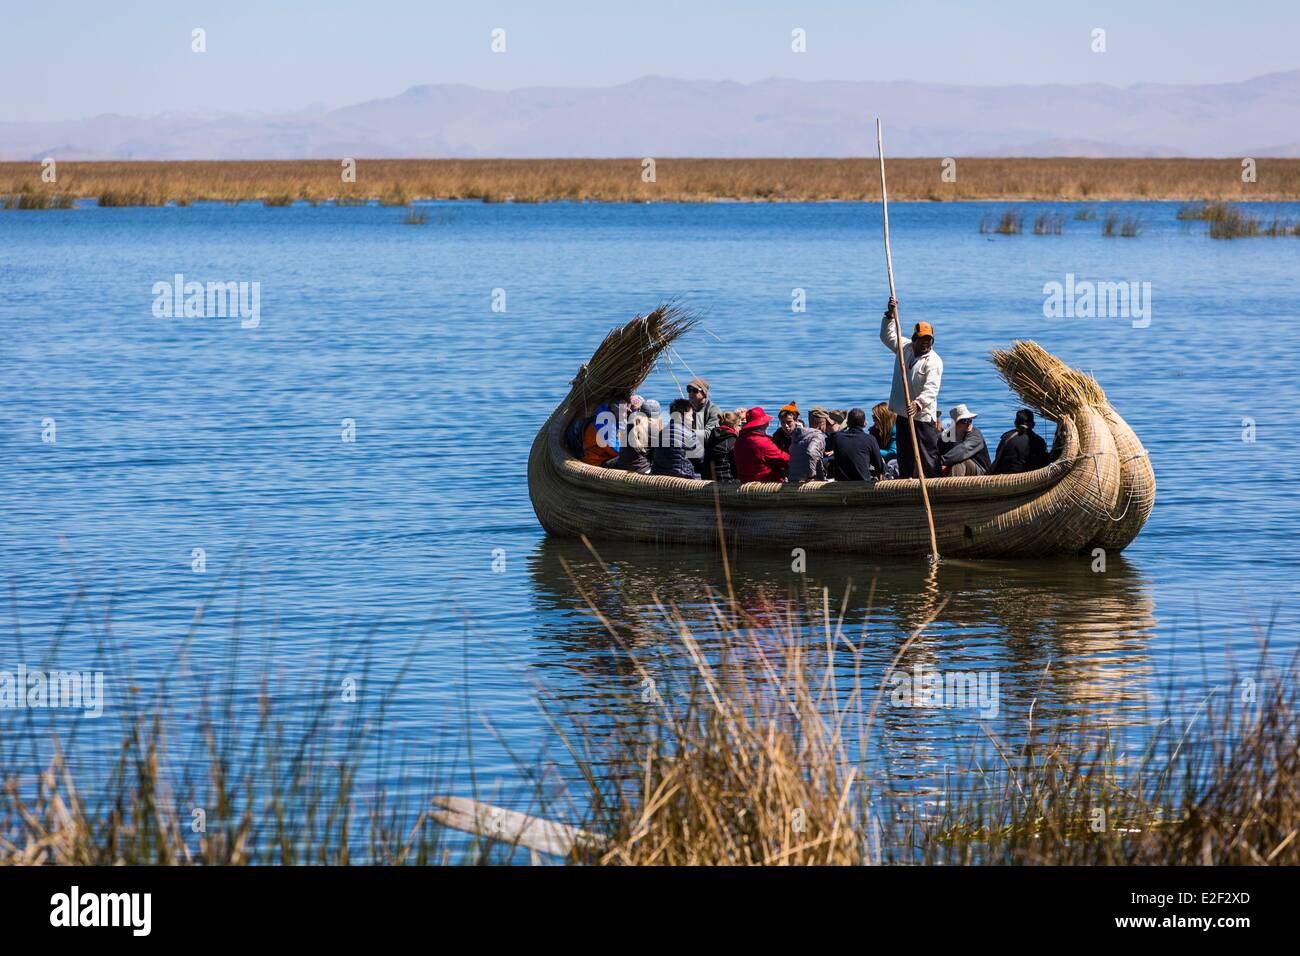 Il Perù, Provincia di Puno, il lago Titicaca, i discendenti degli indiani Uros live su flottante isole reed e vivono prevalentemente di turismo Foto Stock